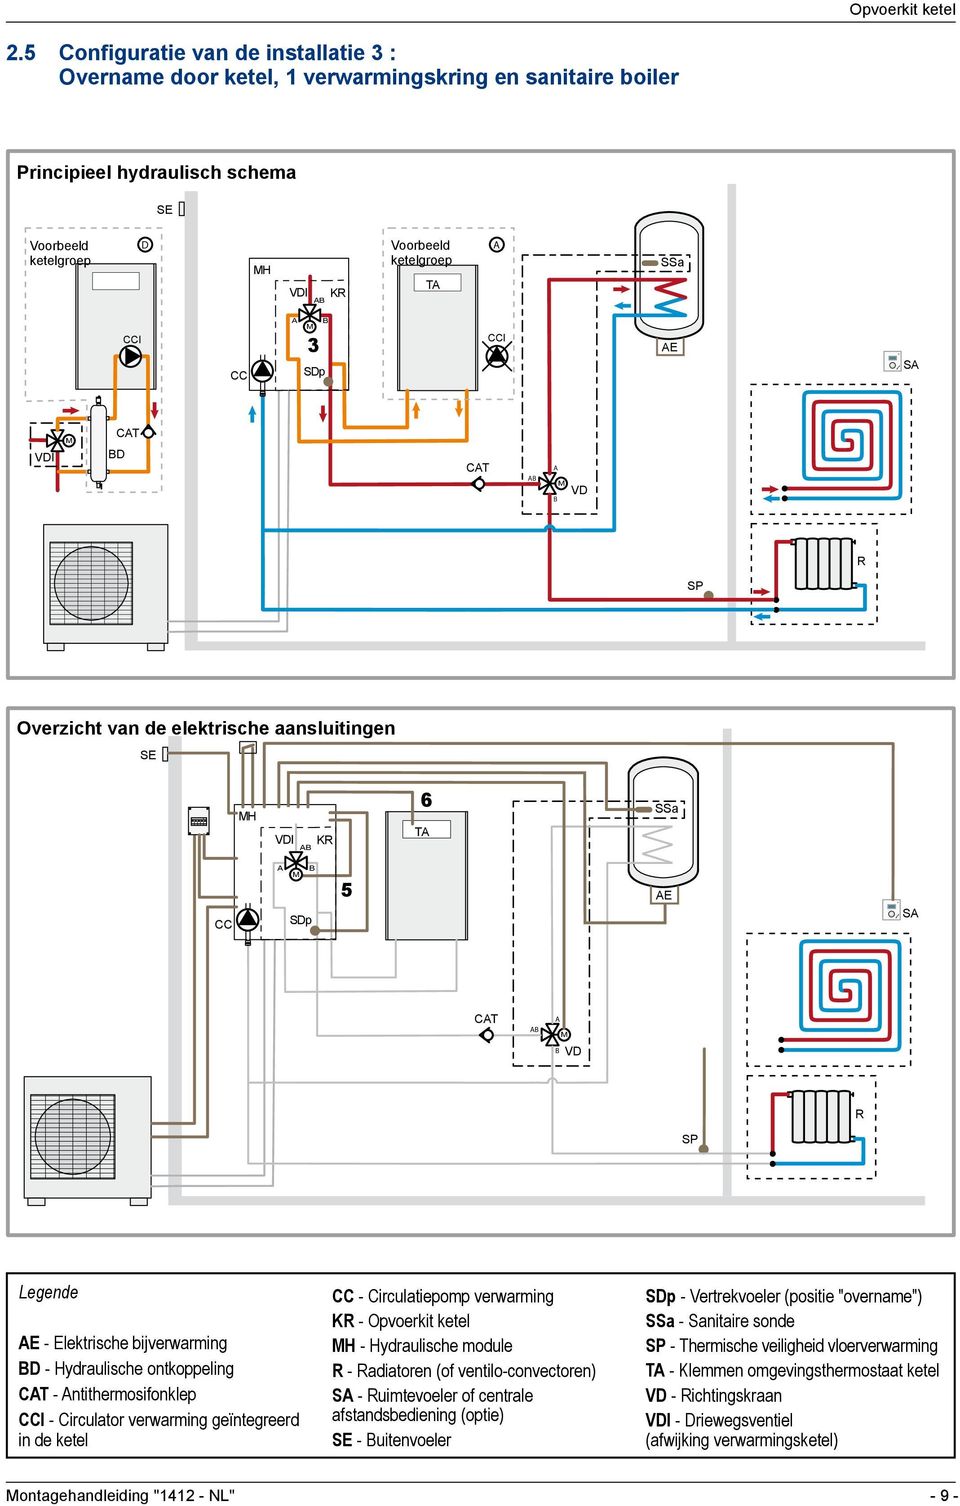 CCI - Circulator verwarming geïntegreerd in de ketel CC - Circulatiepomp verwarming KR - Opvoerkit ketel H - Hydraulische module R - Radiatoren (of ventilo-convectoren) S - Ruimtevoeler of centrale